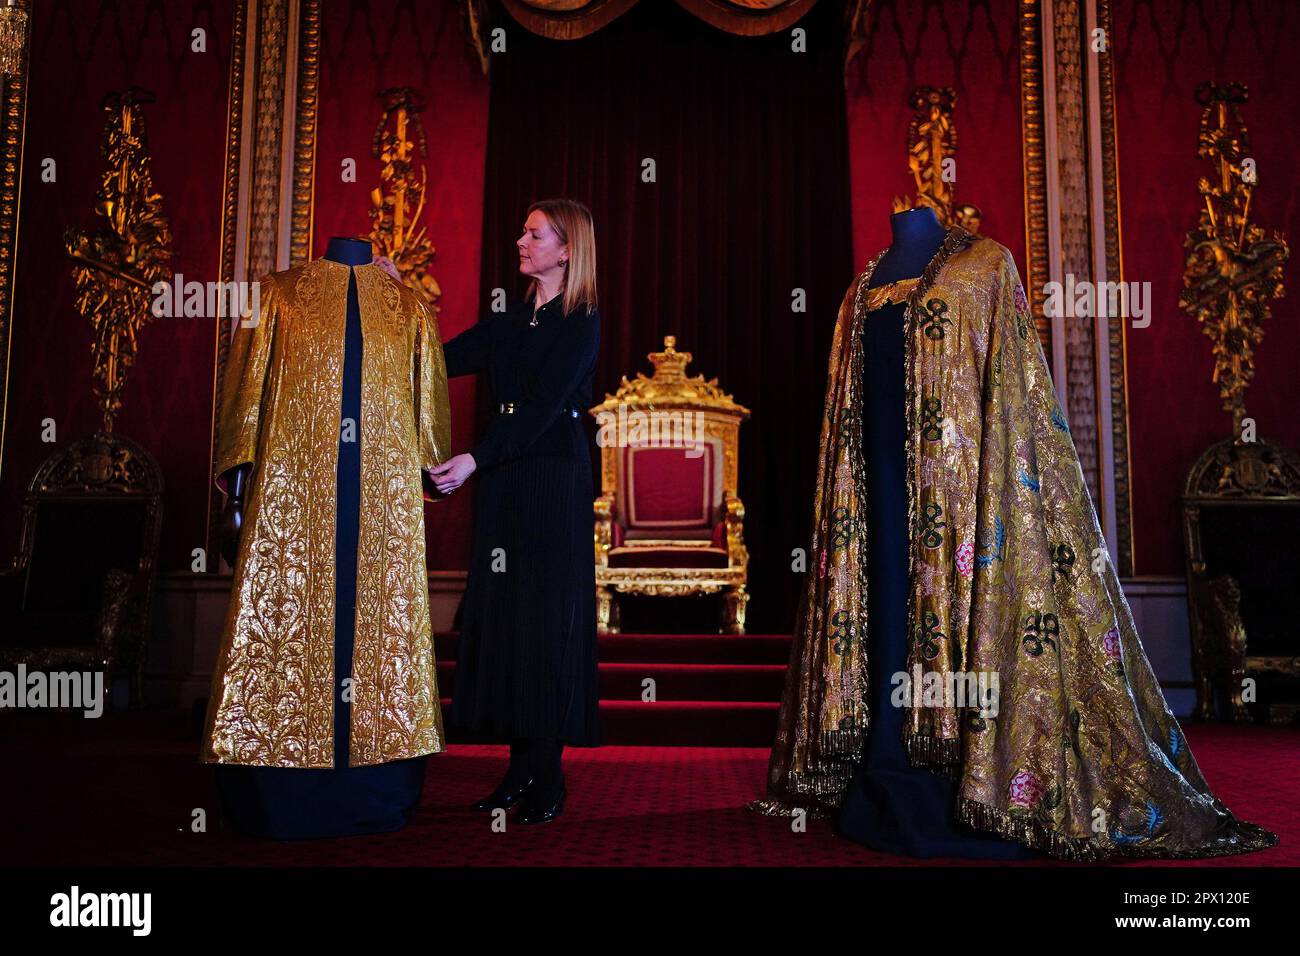 Les vêtements de Coronation, comprenant la Supertunica (à gauche) et le manteau impérial (à droite), exposés dans la salle du Trône à Buckingham Palace, Londres. Les vêtements seront portés par le roi Charles III lors de son couronnement à l'abbaye de Westminster sur 6 mai. Date de la photo: Mercredi 26 avril 2023. Banque D'Images